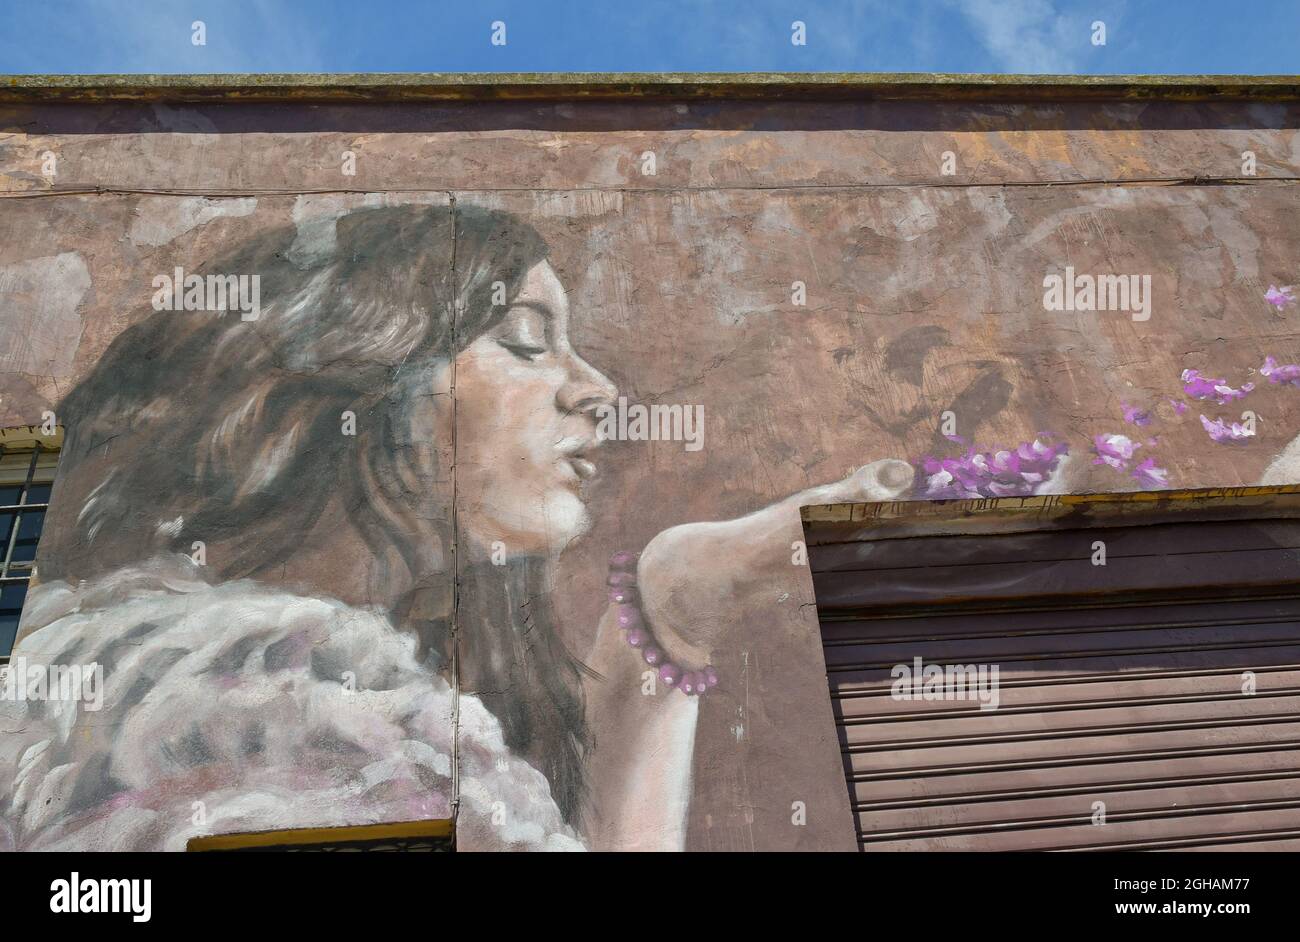 Détail de la fresque murale 'Wisteria flowers' de l'artiste de rue Ligama sur le mur d'un ancien bâtiment dans le quartier de la Nouvelle Venise, Livourne, Toscane, Italie Banque D'Images